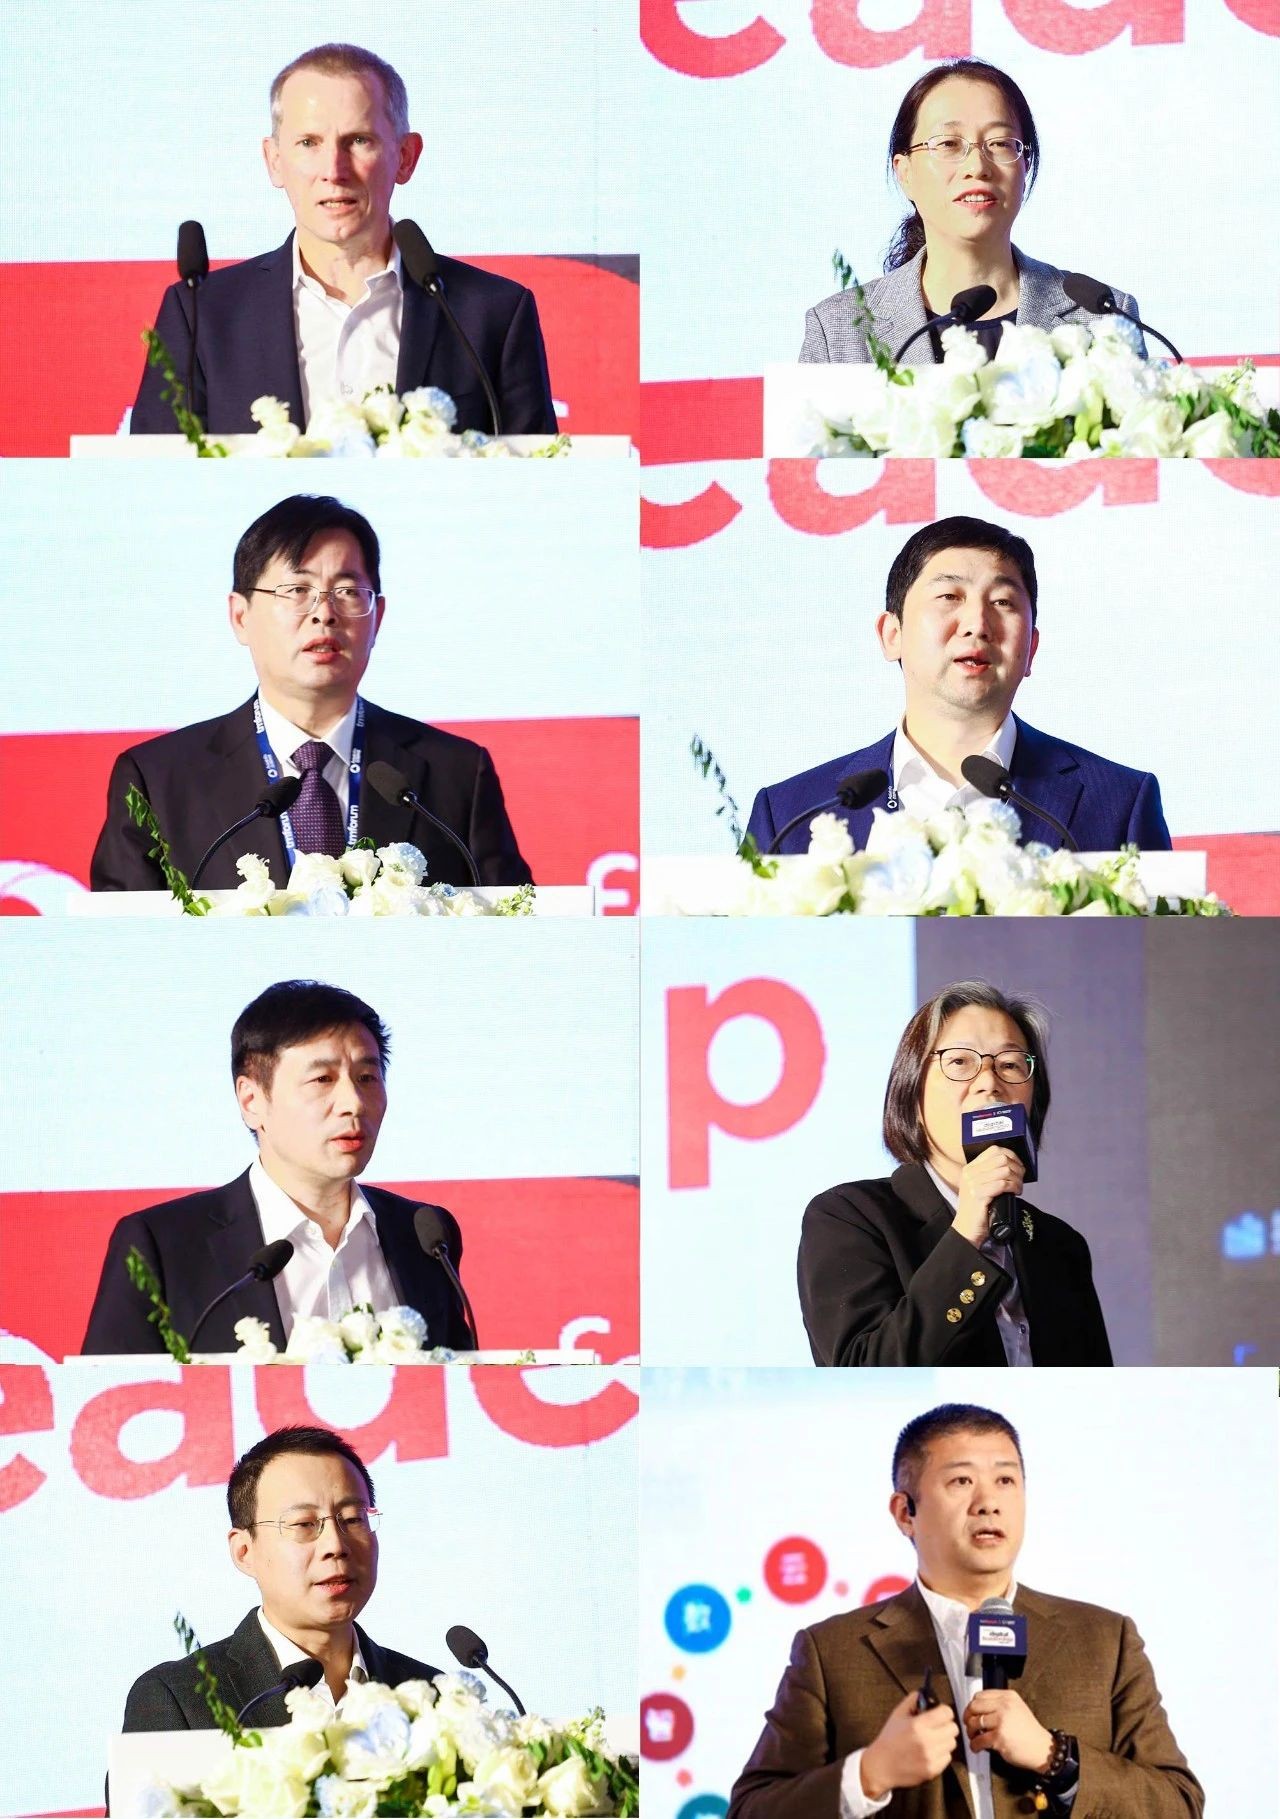 亚信科技、TM Forum联合举办数字领导力中国峰会，助百行千业打造转型升级双引擎